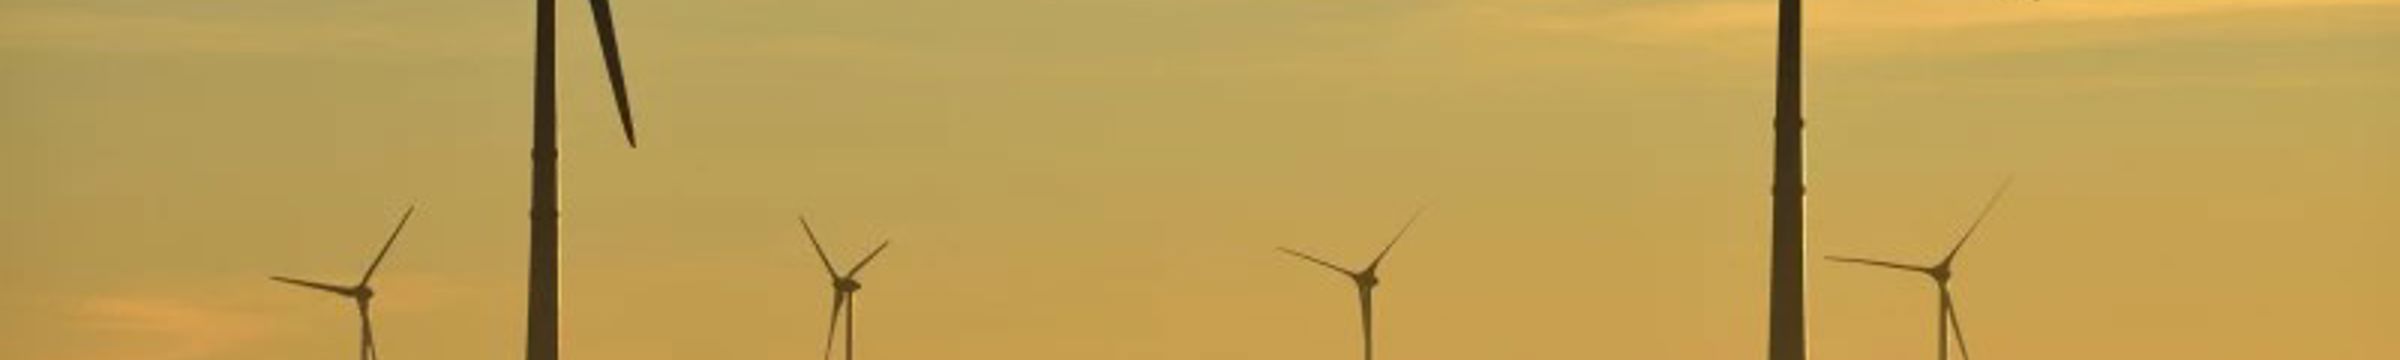 Brazilian wind farm